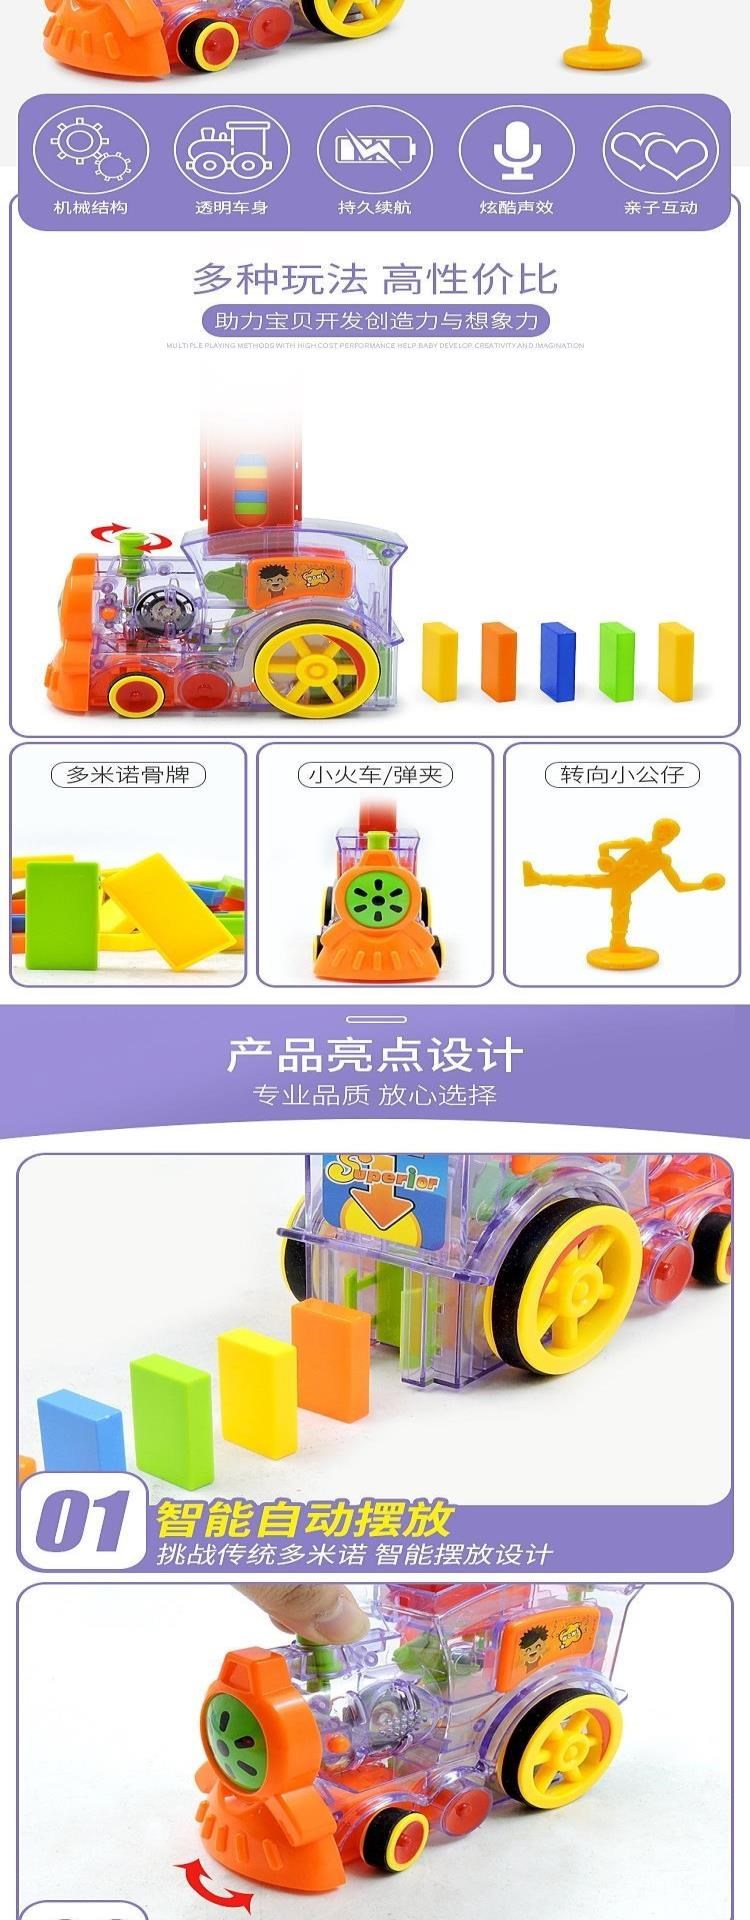 Douyin, đồ chơi khối xây dựng dành cho trẻ em domino tiêu chuẩn giống nhau, các quân domino màu tự động được đưa vào xe lửa - Khối xây dựng